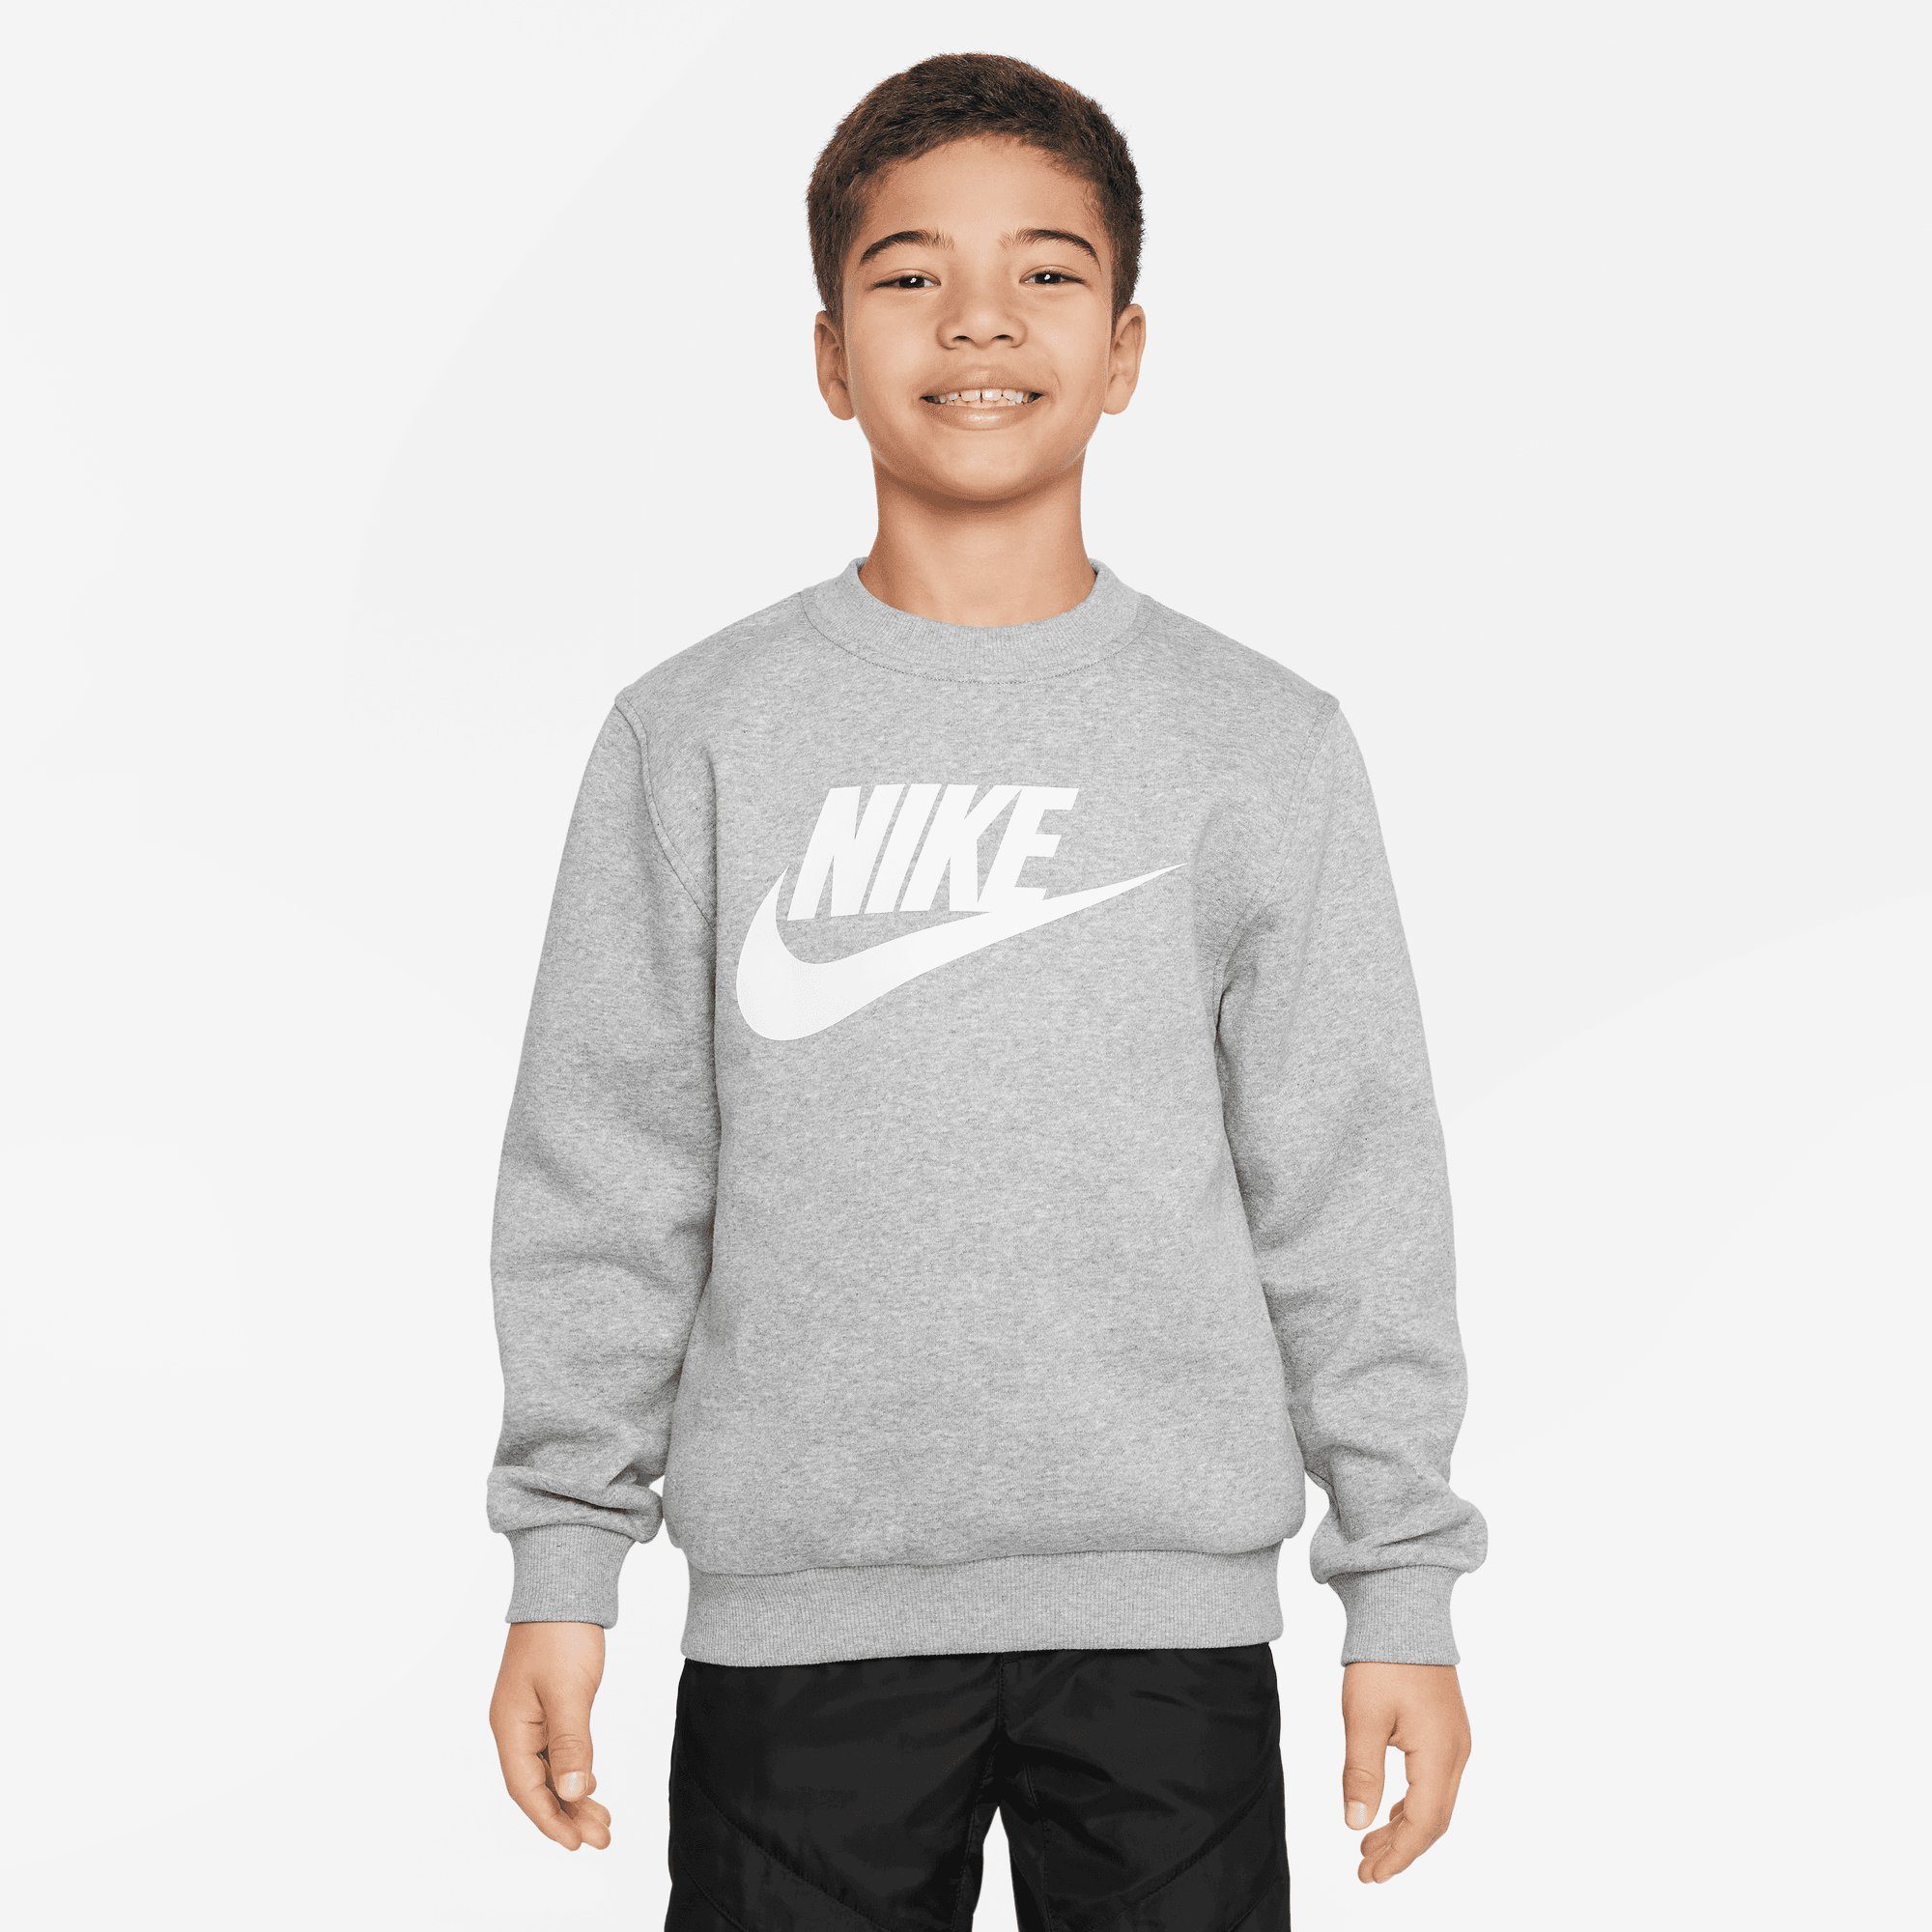 HEATHER/WHITE Nike Sweatshirt SWEATSHIRT GREY KIDS' FLEECE Sportswear CLUB BIG DK